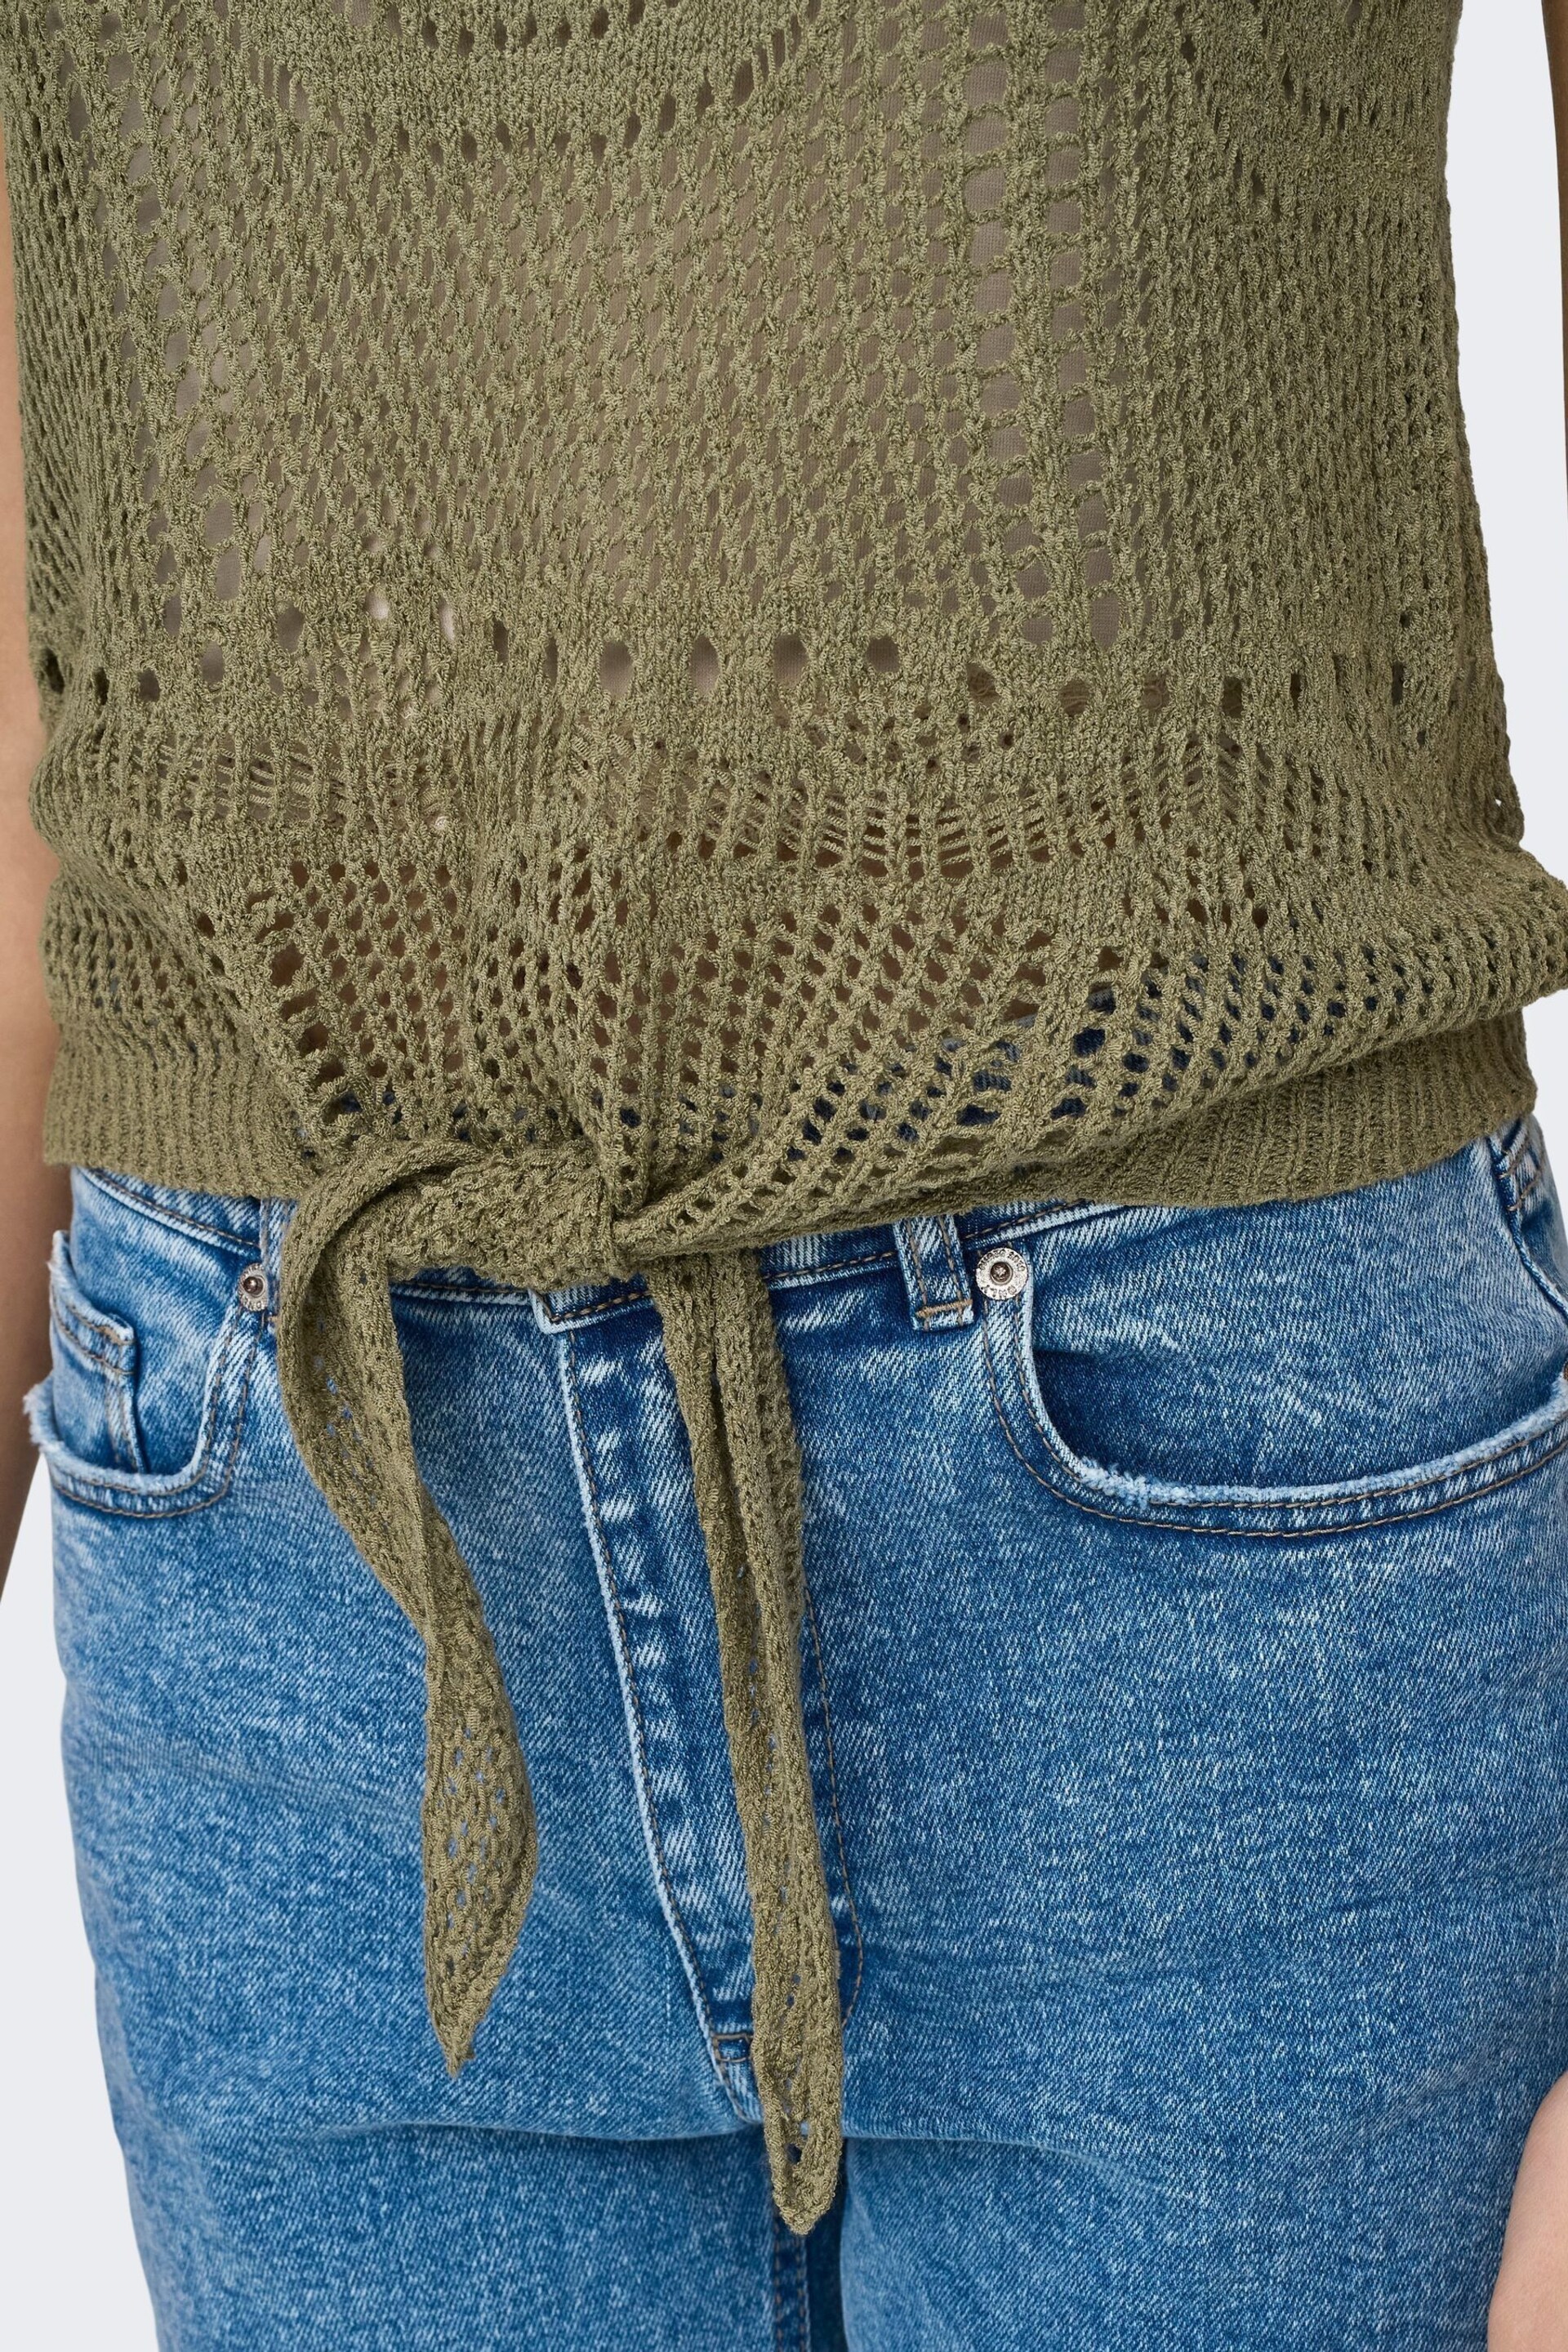 JDY Green Crochet Sleeveless Tie Front Top - Image 4 of 6